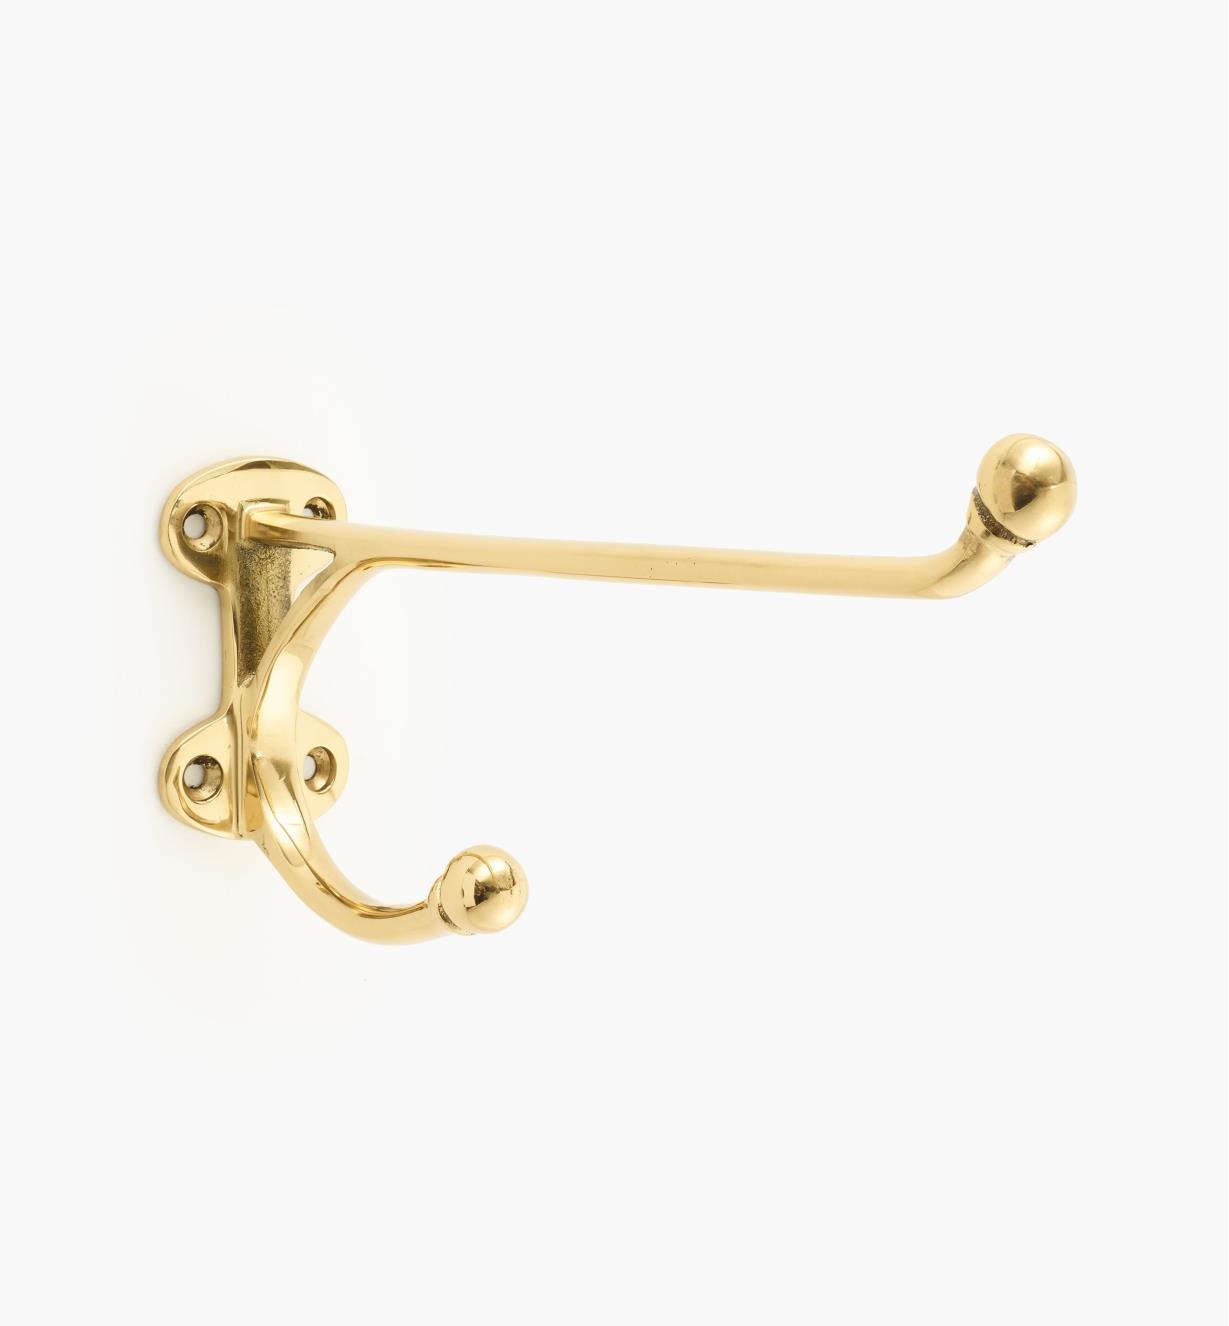 01W9009 - 9" Large Brass Hook